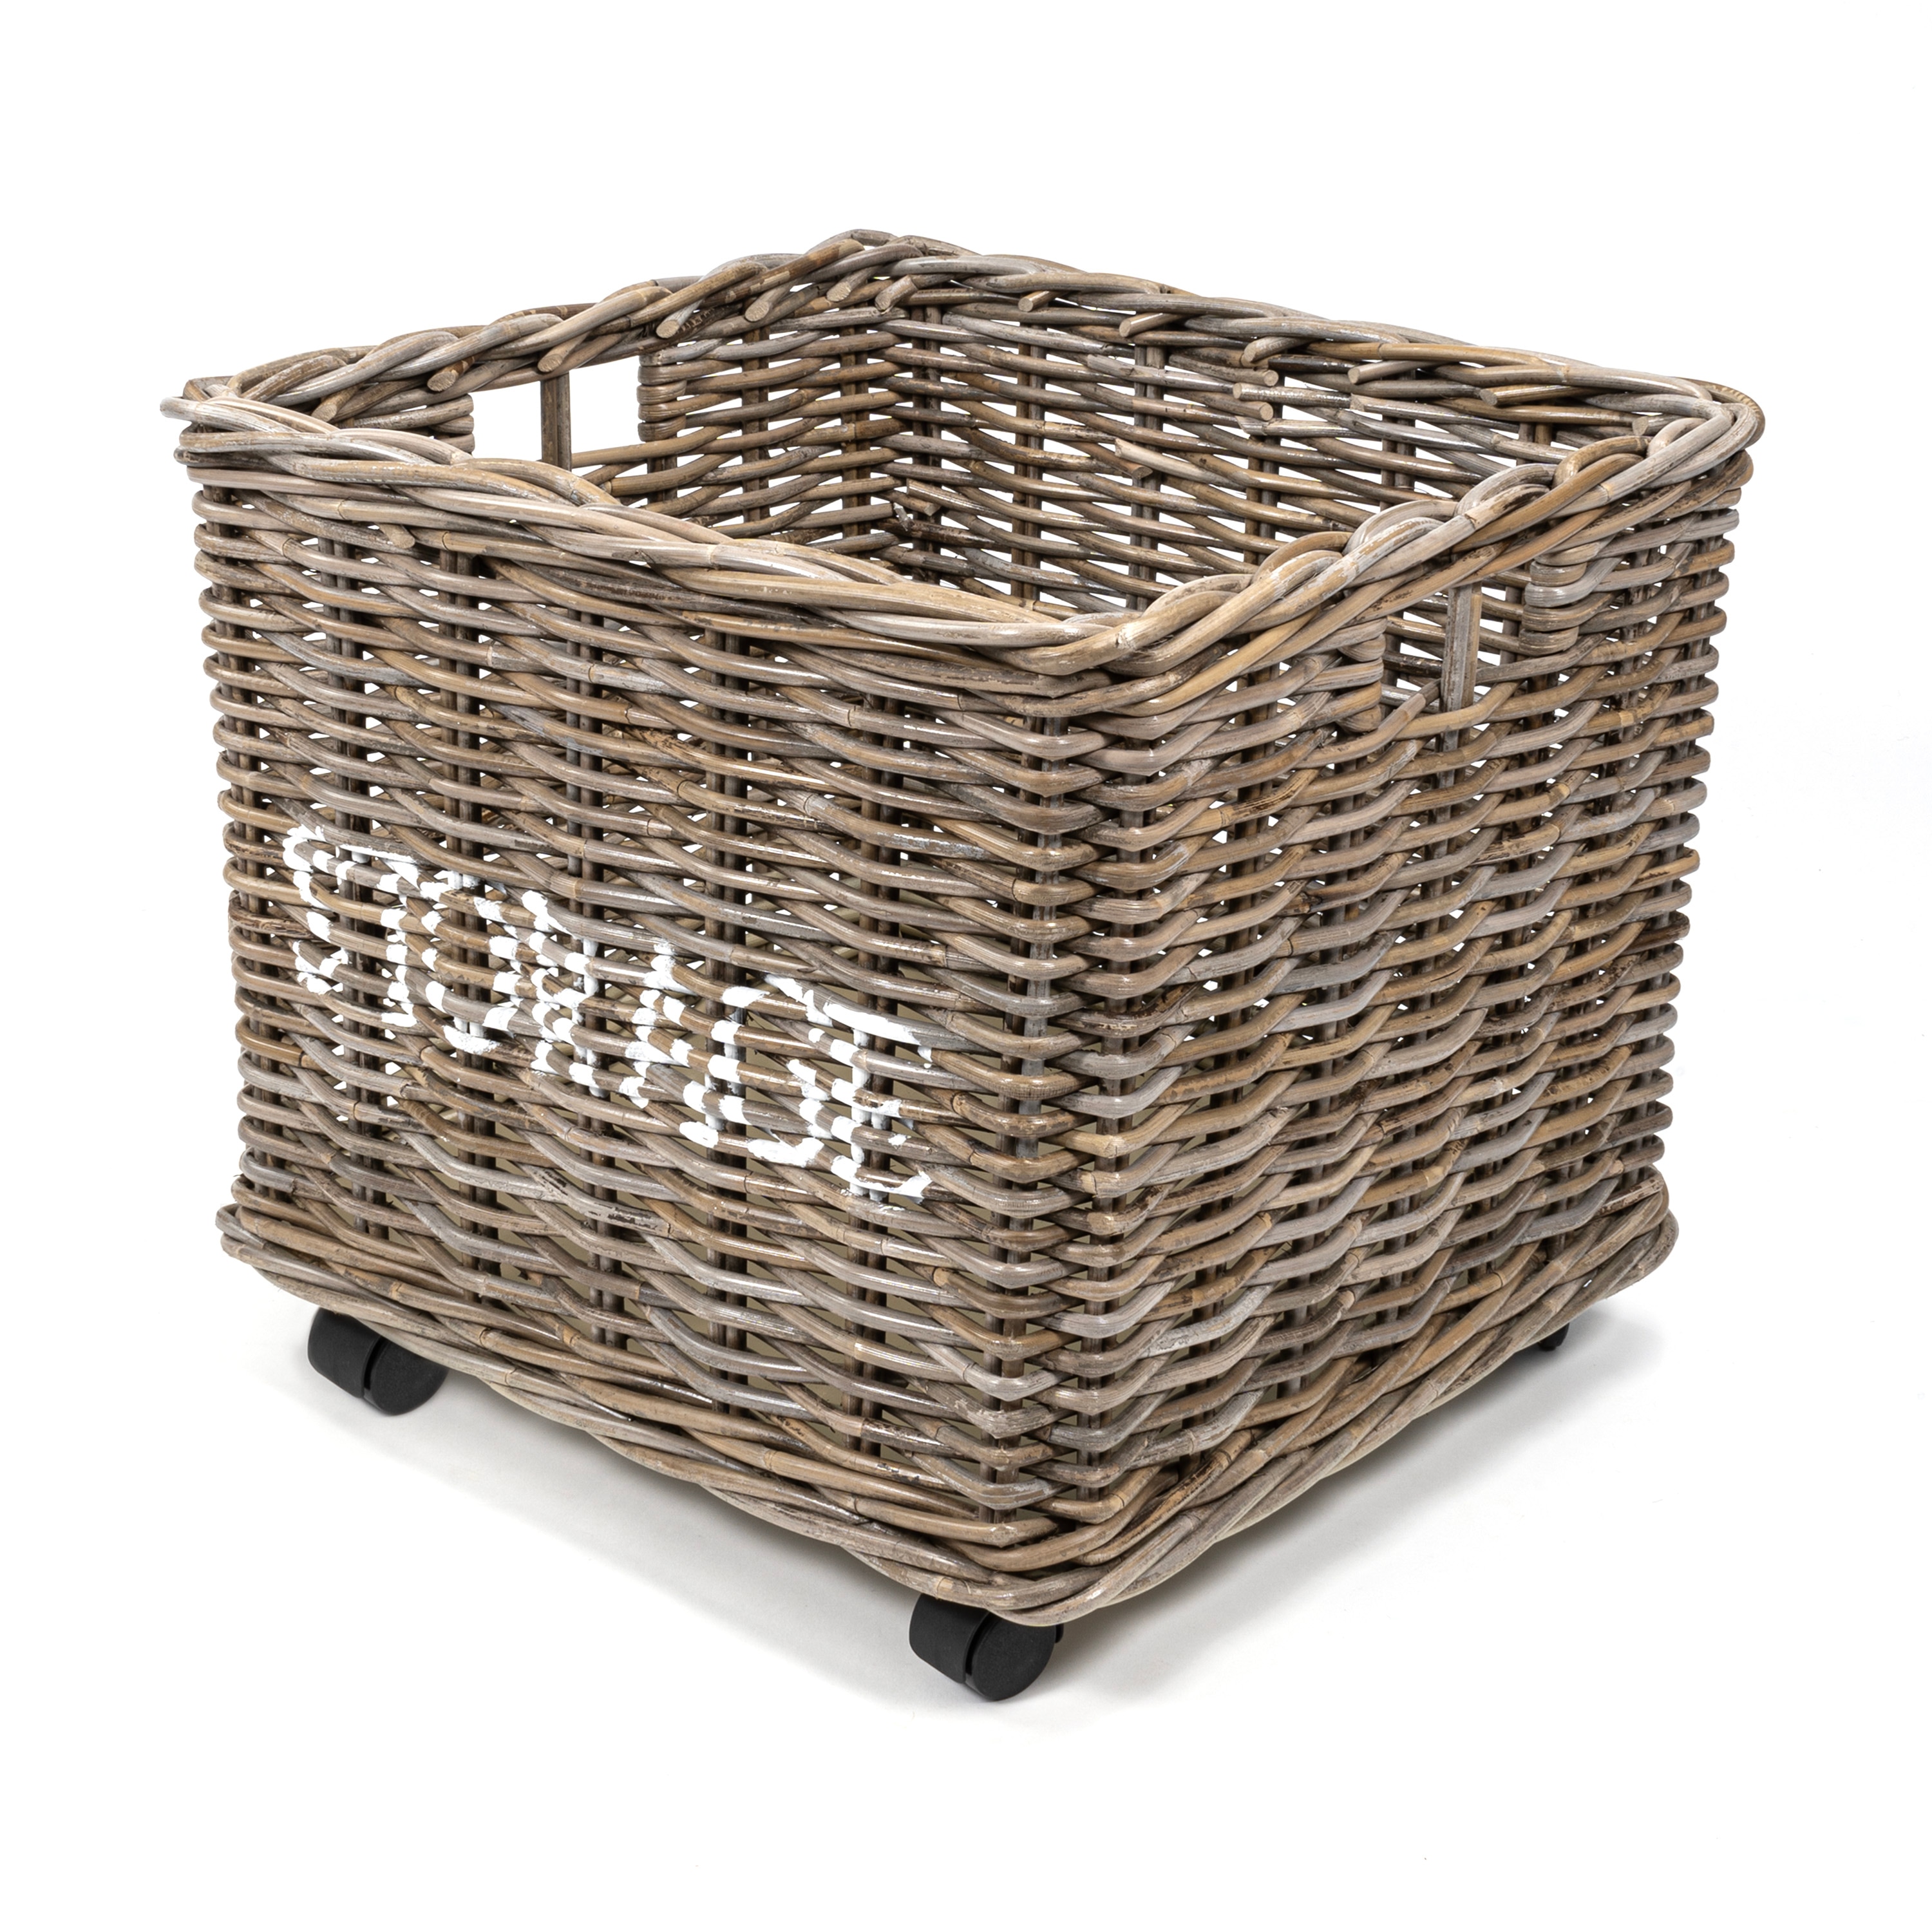 Shop Best Decorative Storage Baskets and Bins